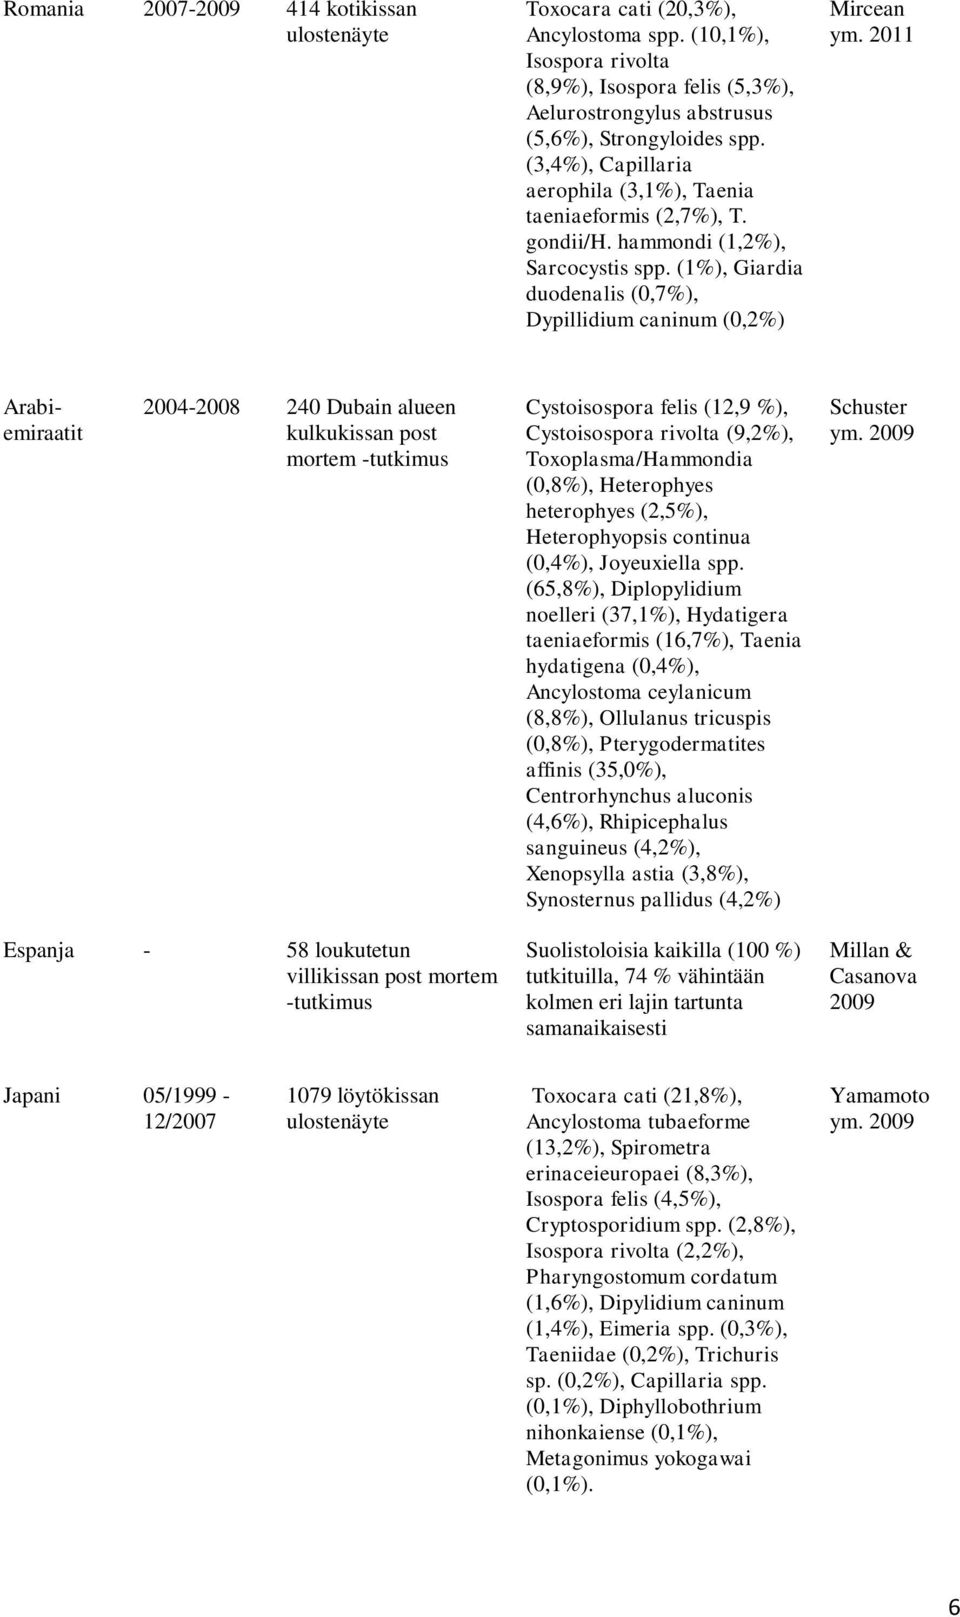 2011 Arabiemiraatit 2004-2008 240 Dubain alueen kulkukissan post mortem -tutkimus Cystoisospora felis (12,9 %), Cystoisospora rivolta (9,2%), Toxoplasma/Hammondia (0,8%), Heterophyes heterophyes